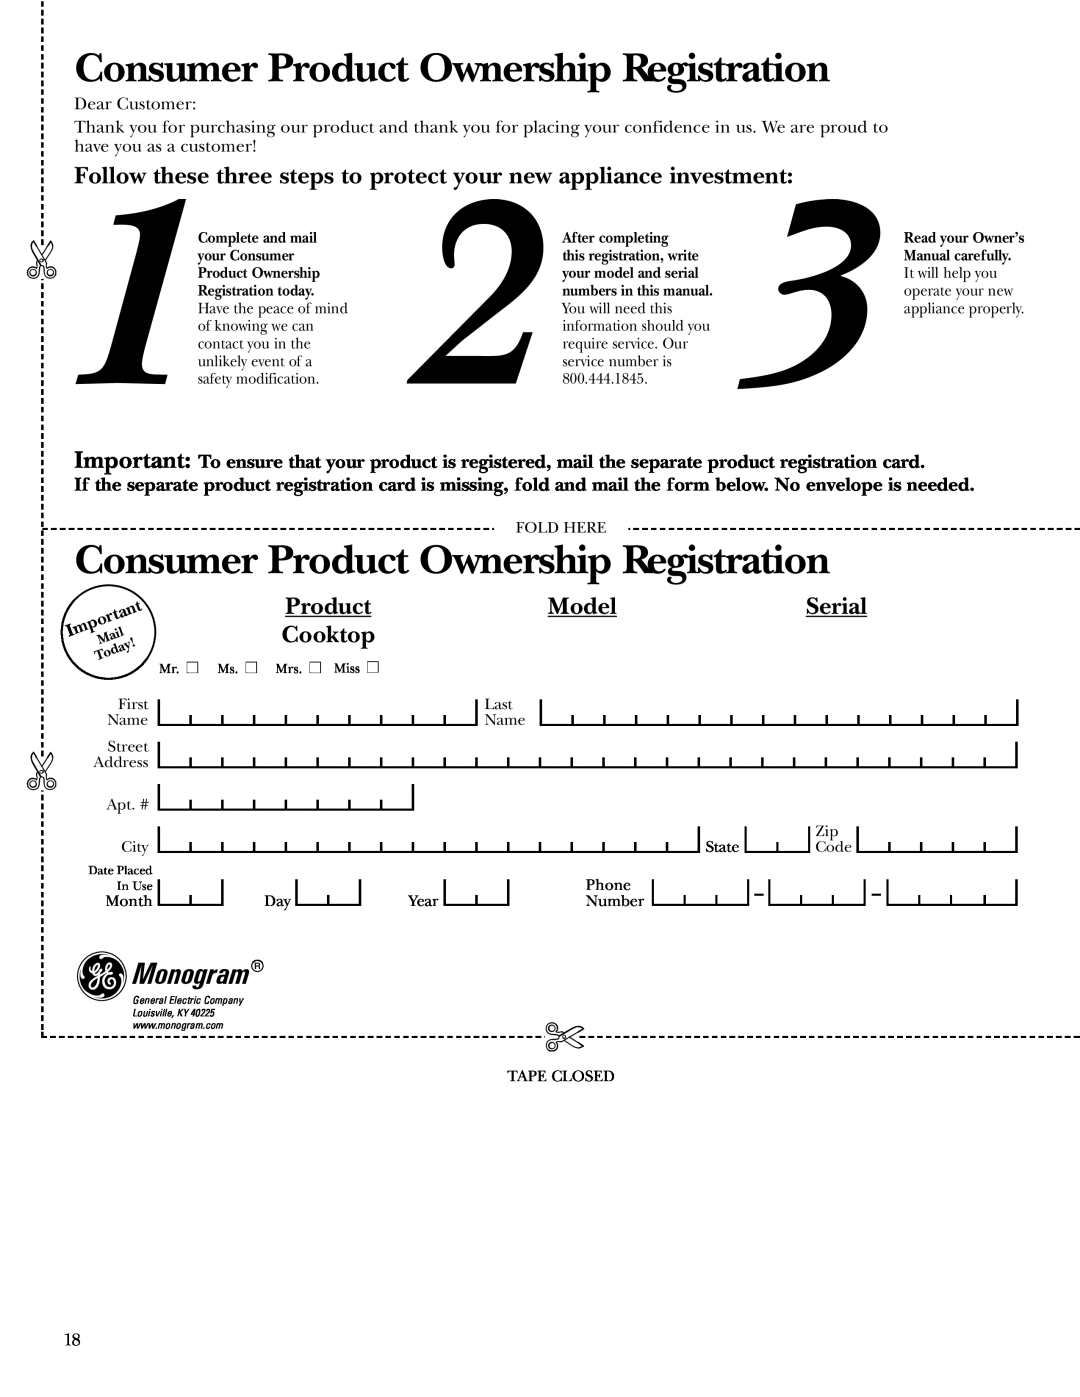 GE ZEU769 owner manual Consumer Product Ownership Registration, Monogram, Model, Serial, Cooktop 